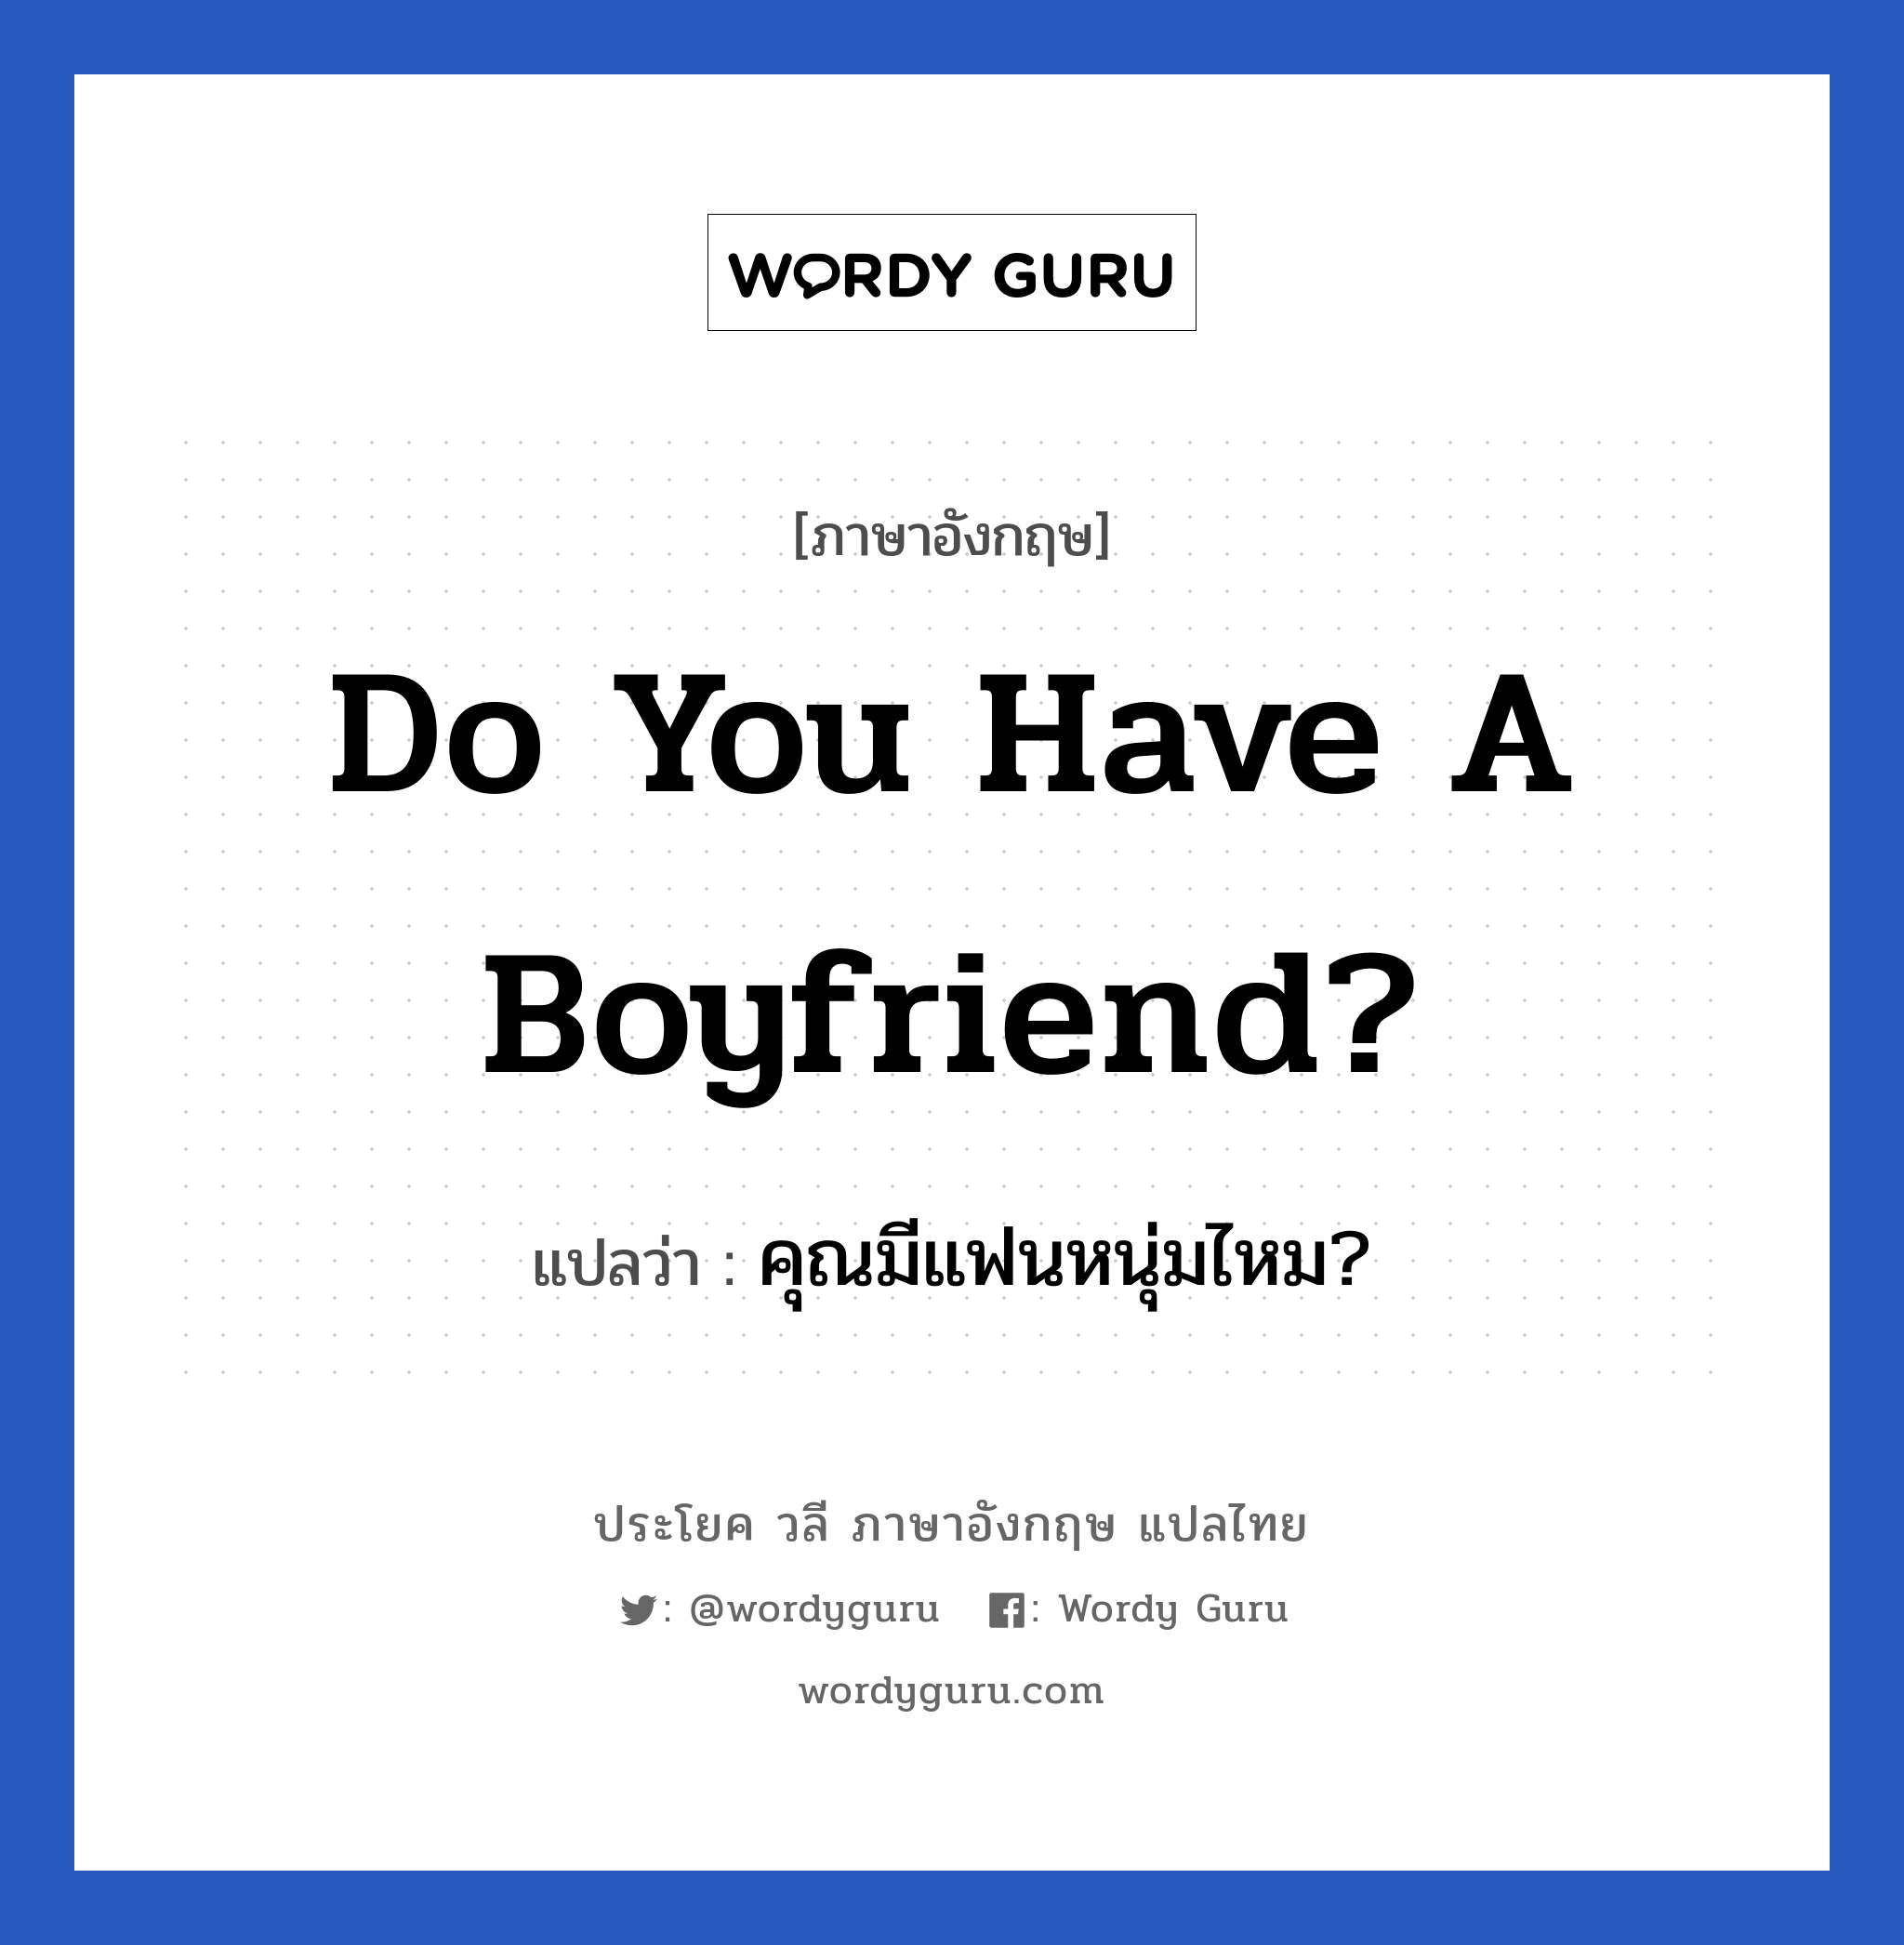 Do you have a boyfriend? แปลว่า?, วลีภาษาอังกฤษ Do you have a boyfriend? แปลว่า คุณมีแฟนหนุ่มไหม?